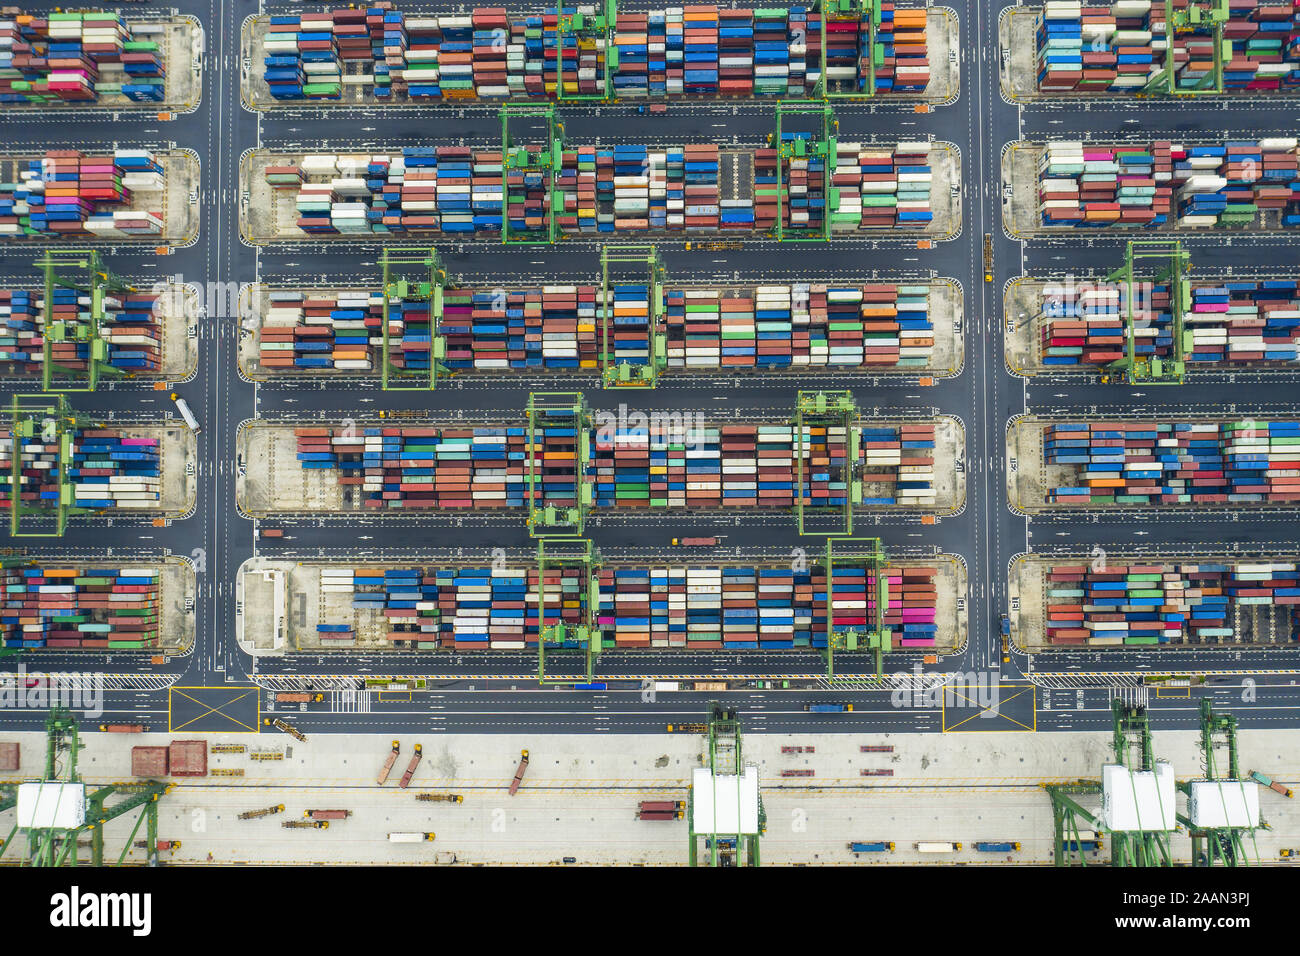 Vista da sopra, splendida vista aerea del porto di Singapore con migliaia di contenitori colorati pronti per essere sul carico di navi. Foto Stock